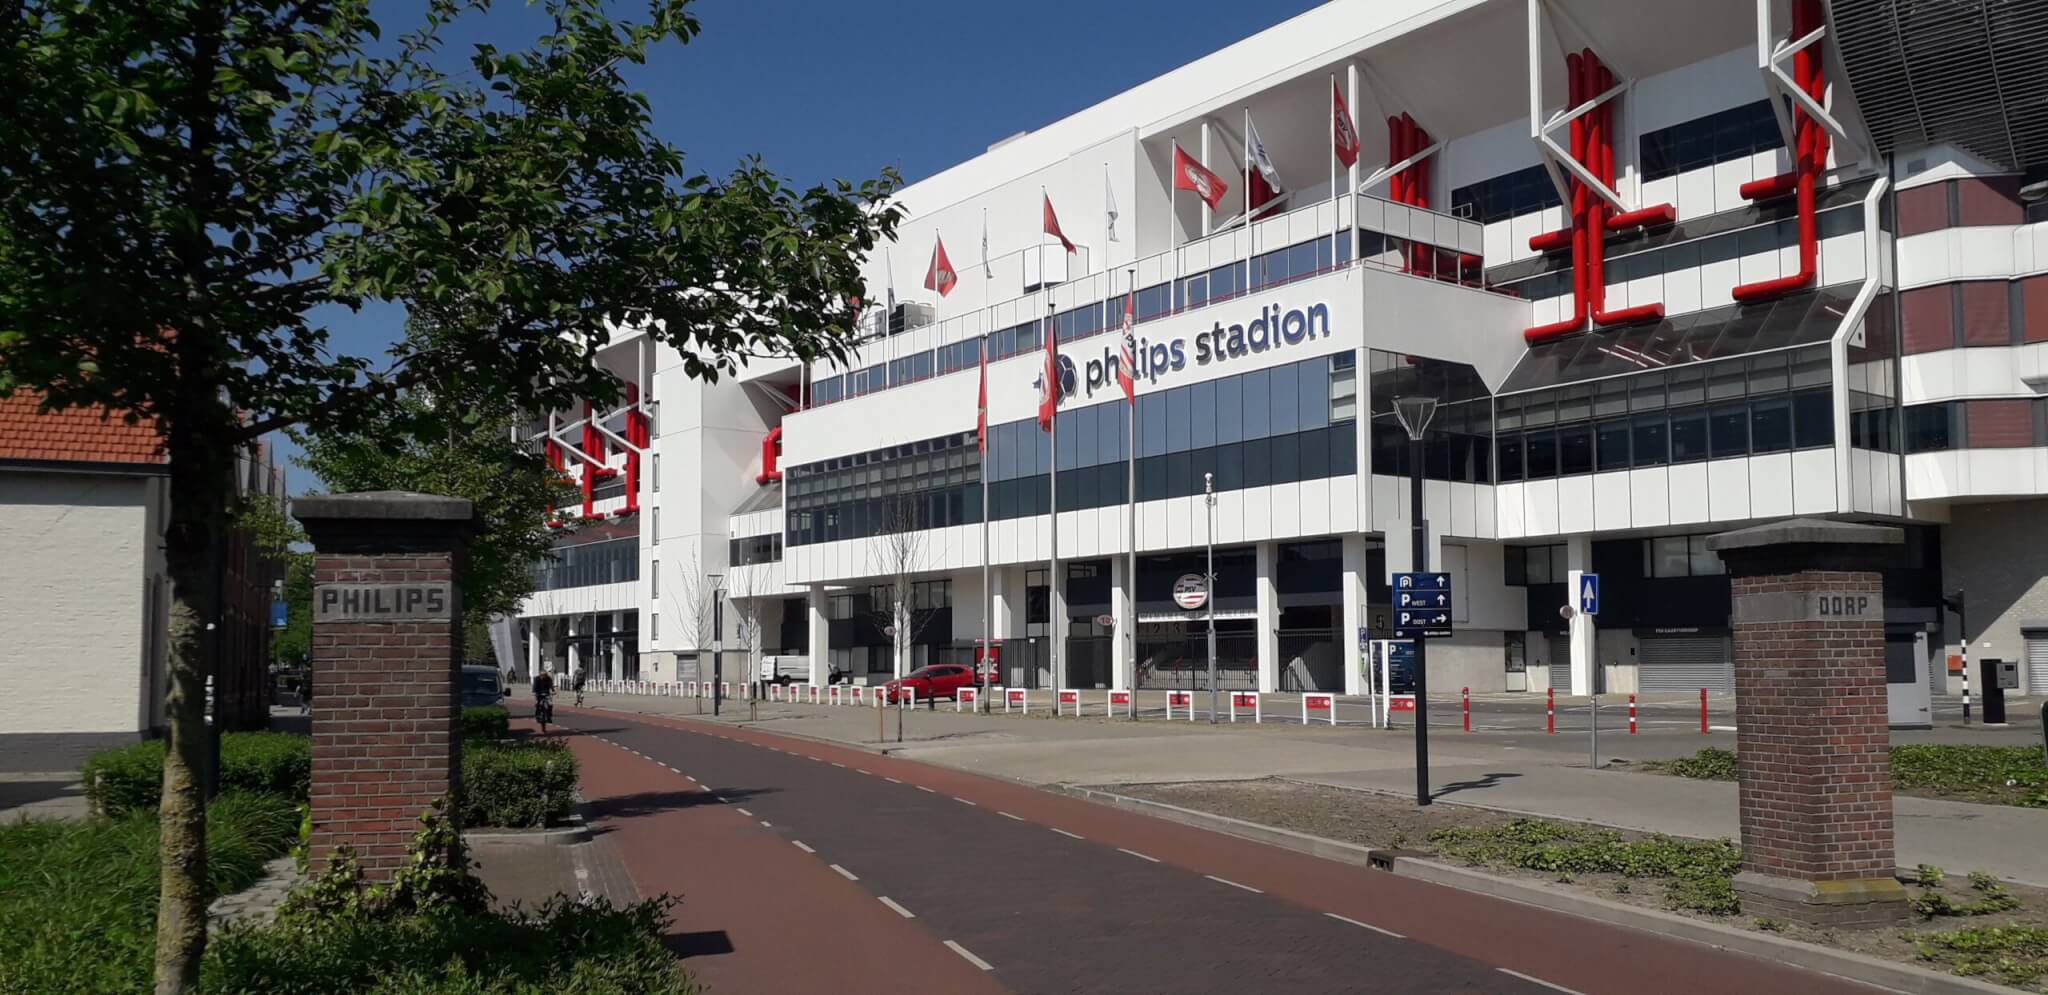 Philips stadion zijde Frederiklaan